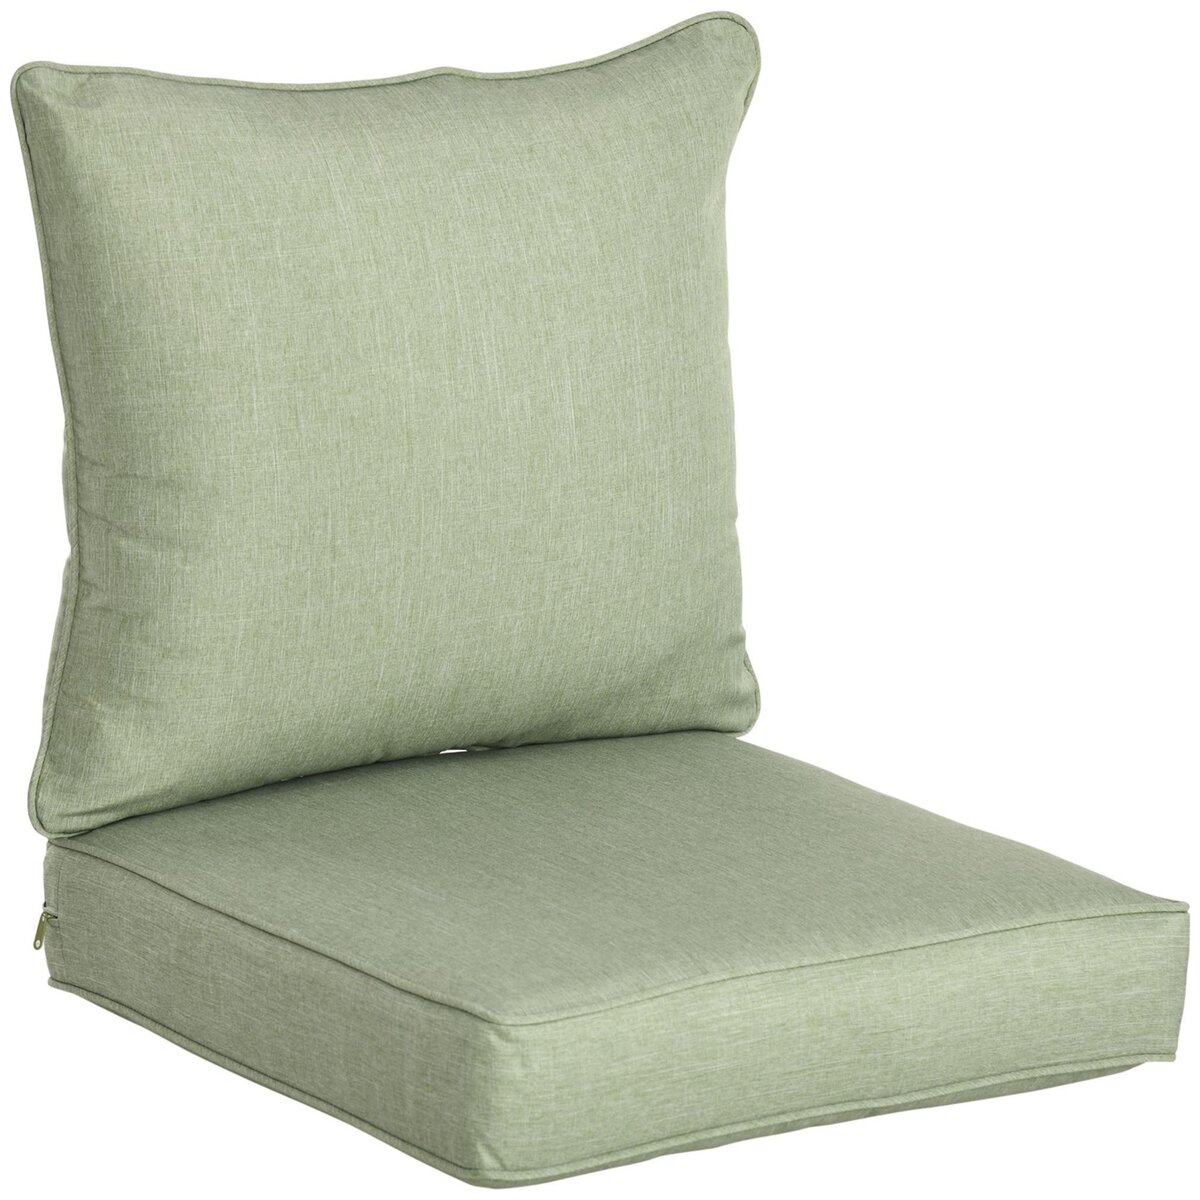 OUTSUNNY Lot de 2 coussins matelas assise dossier pour chaise de jardin  fauteuil polyester vert clair pas cher 